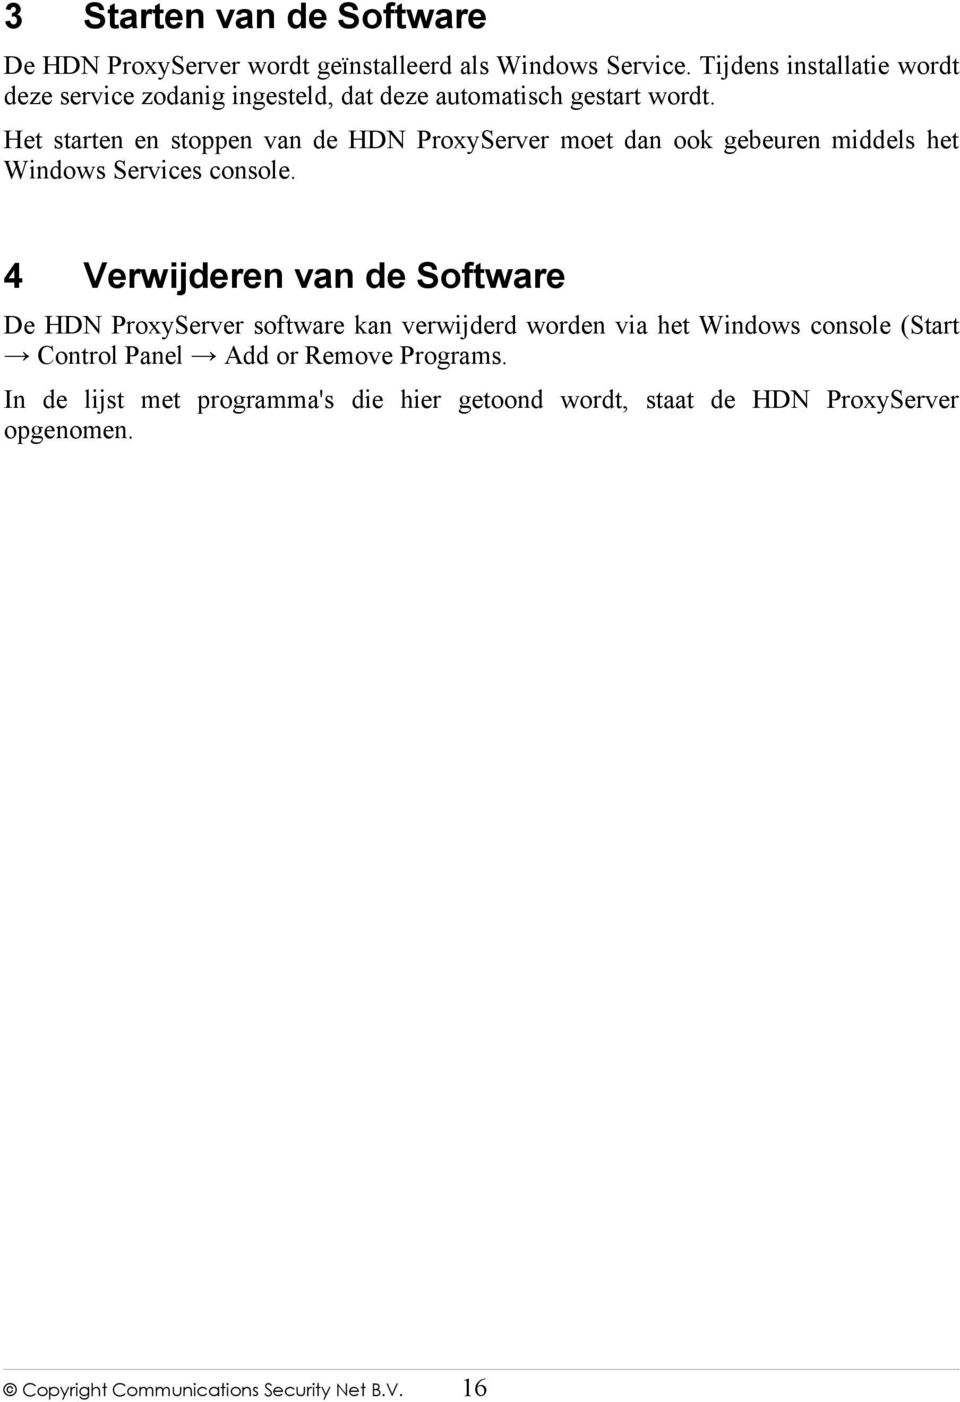 Het starten en stoppen van de HDN ProxyServer moet dan ook gebeuren middels het Windows Services console.